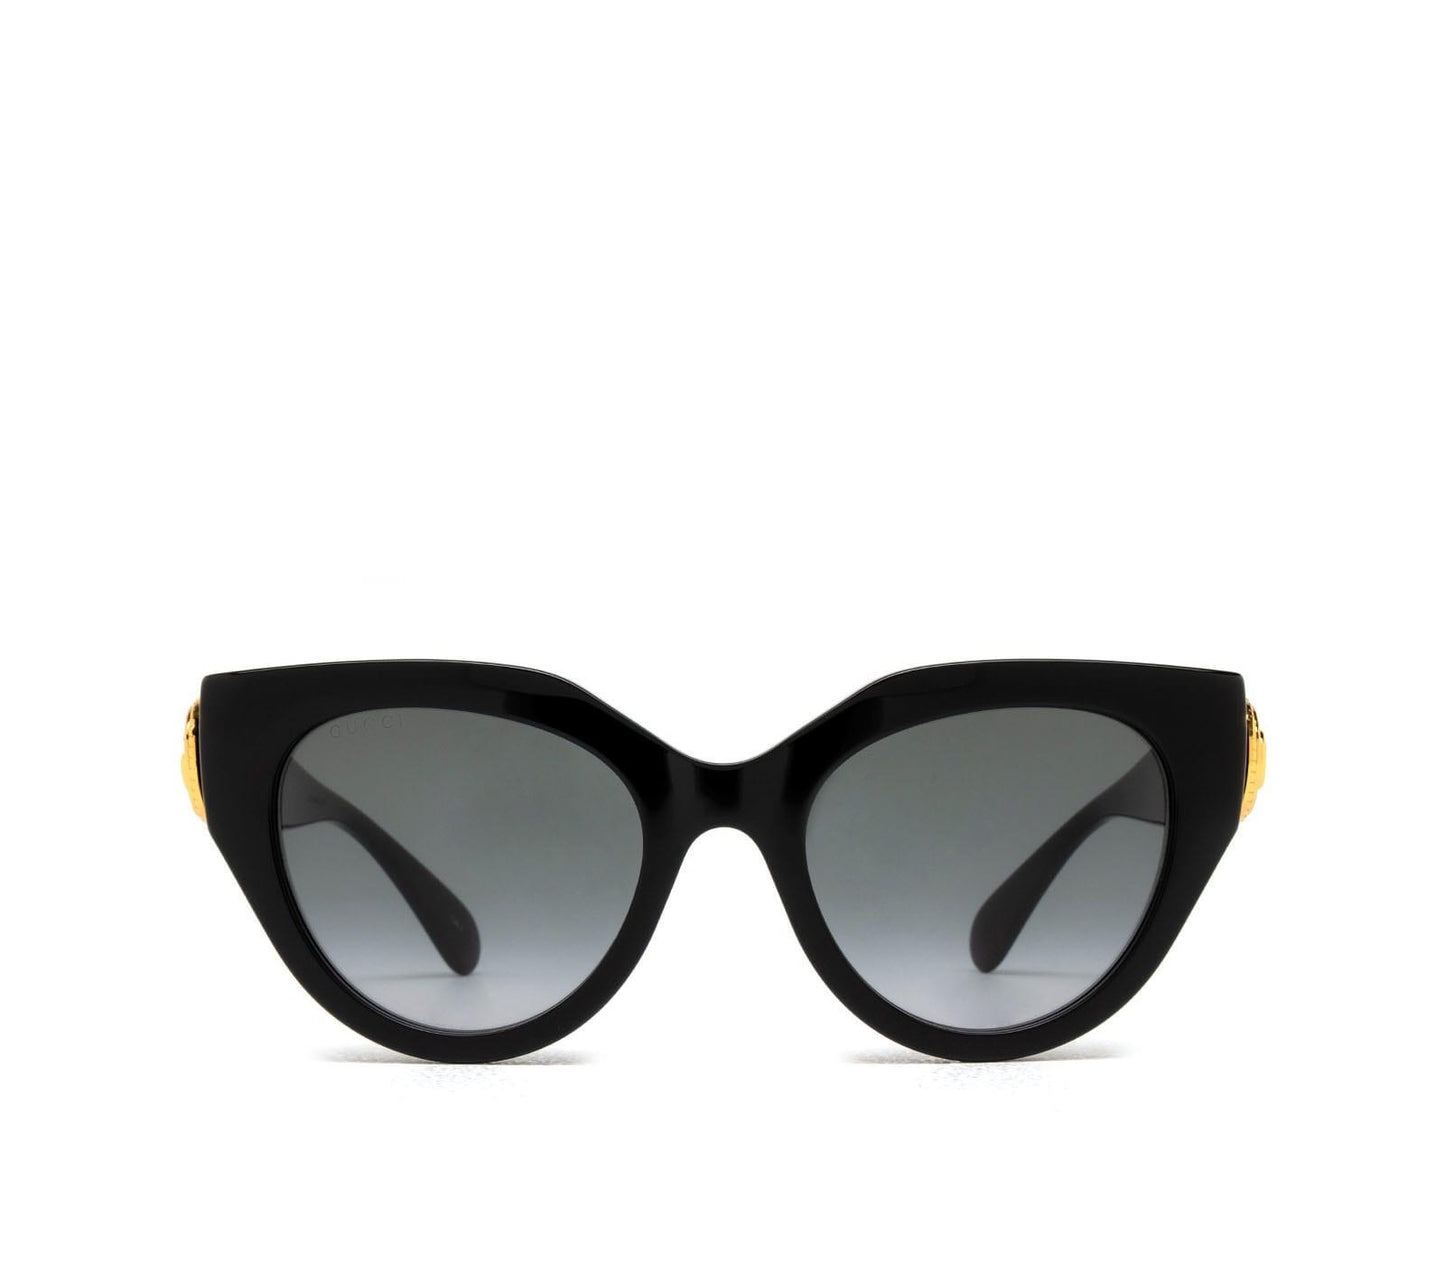 Gucci GG1408S-001 52mm New Sunglasses